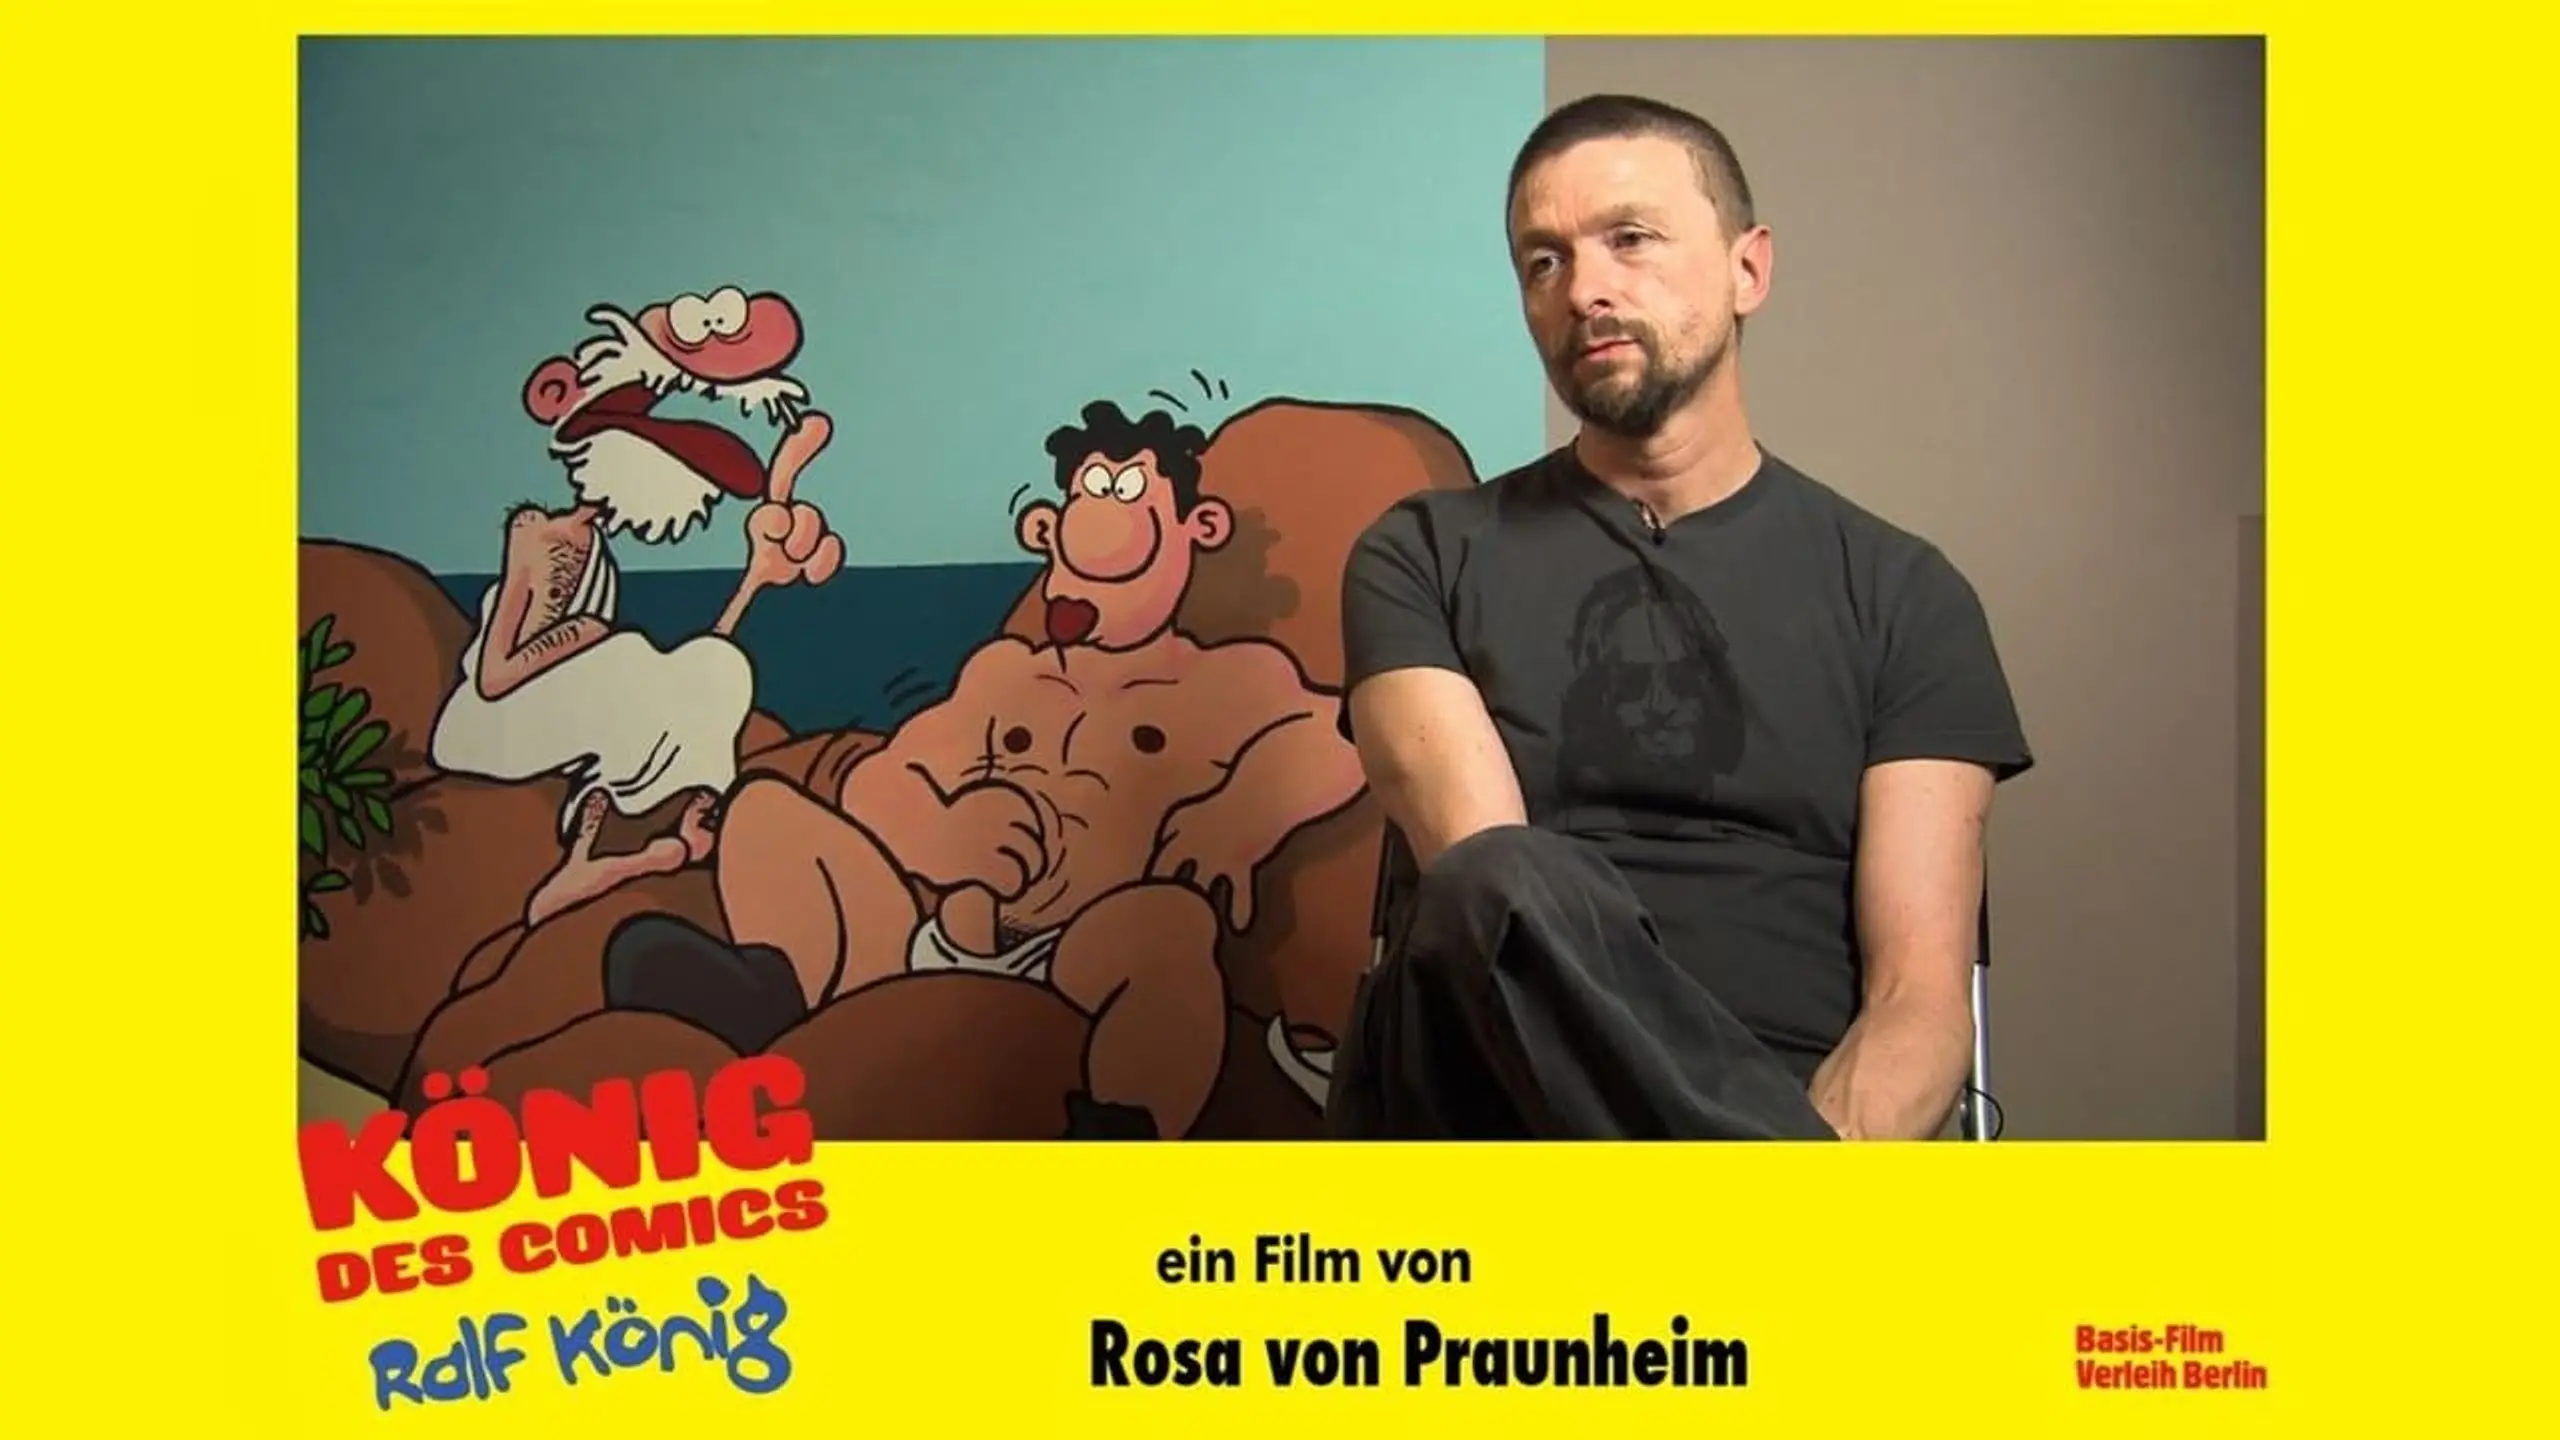 König des Comics – Ralf König